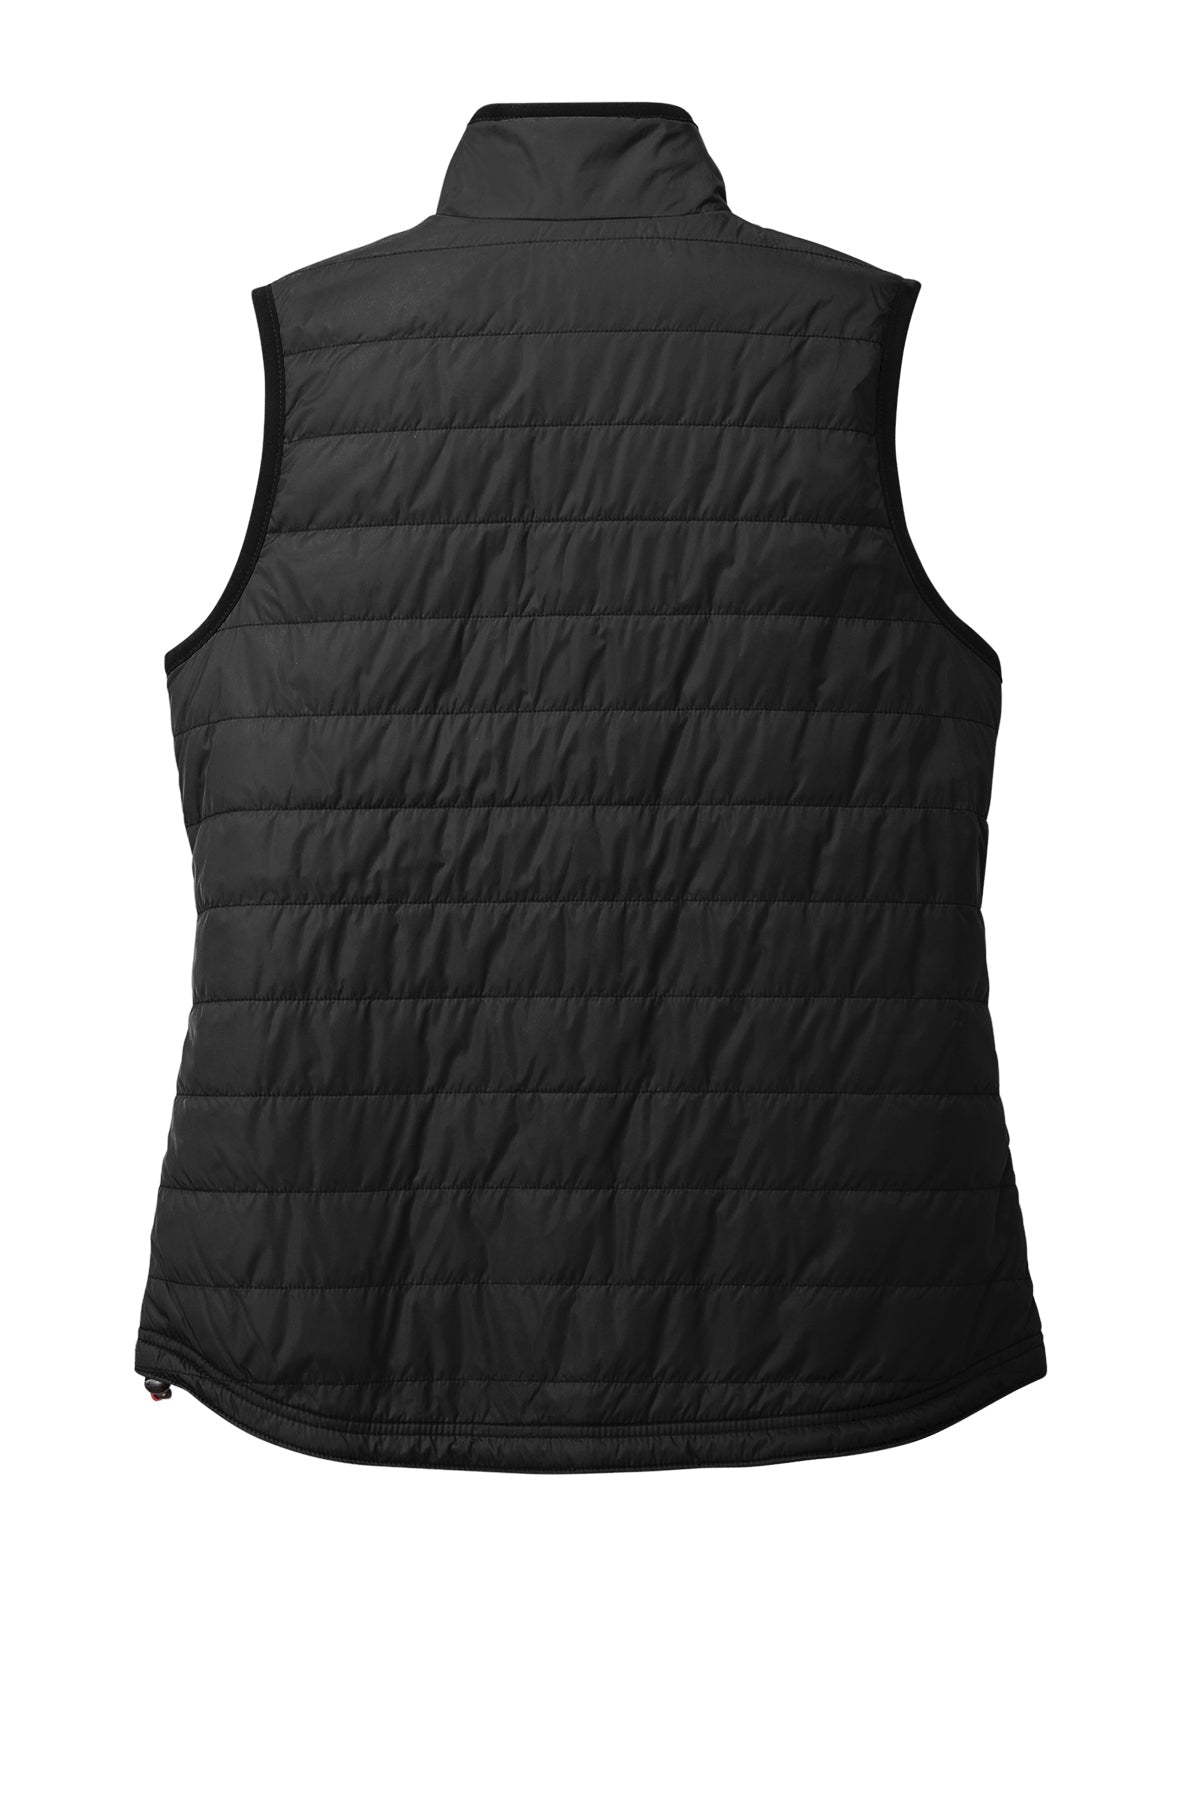 CT104315 Carhartt Women’s Gilliam Vest